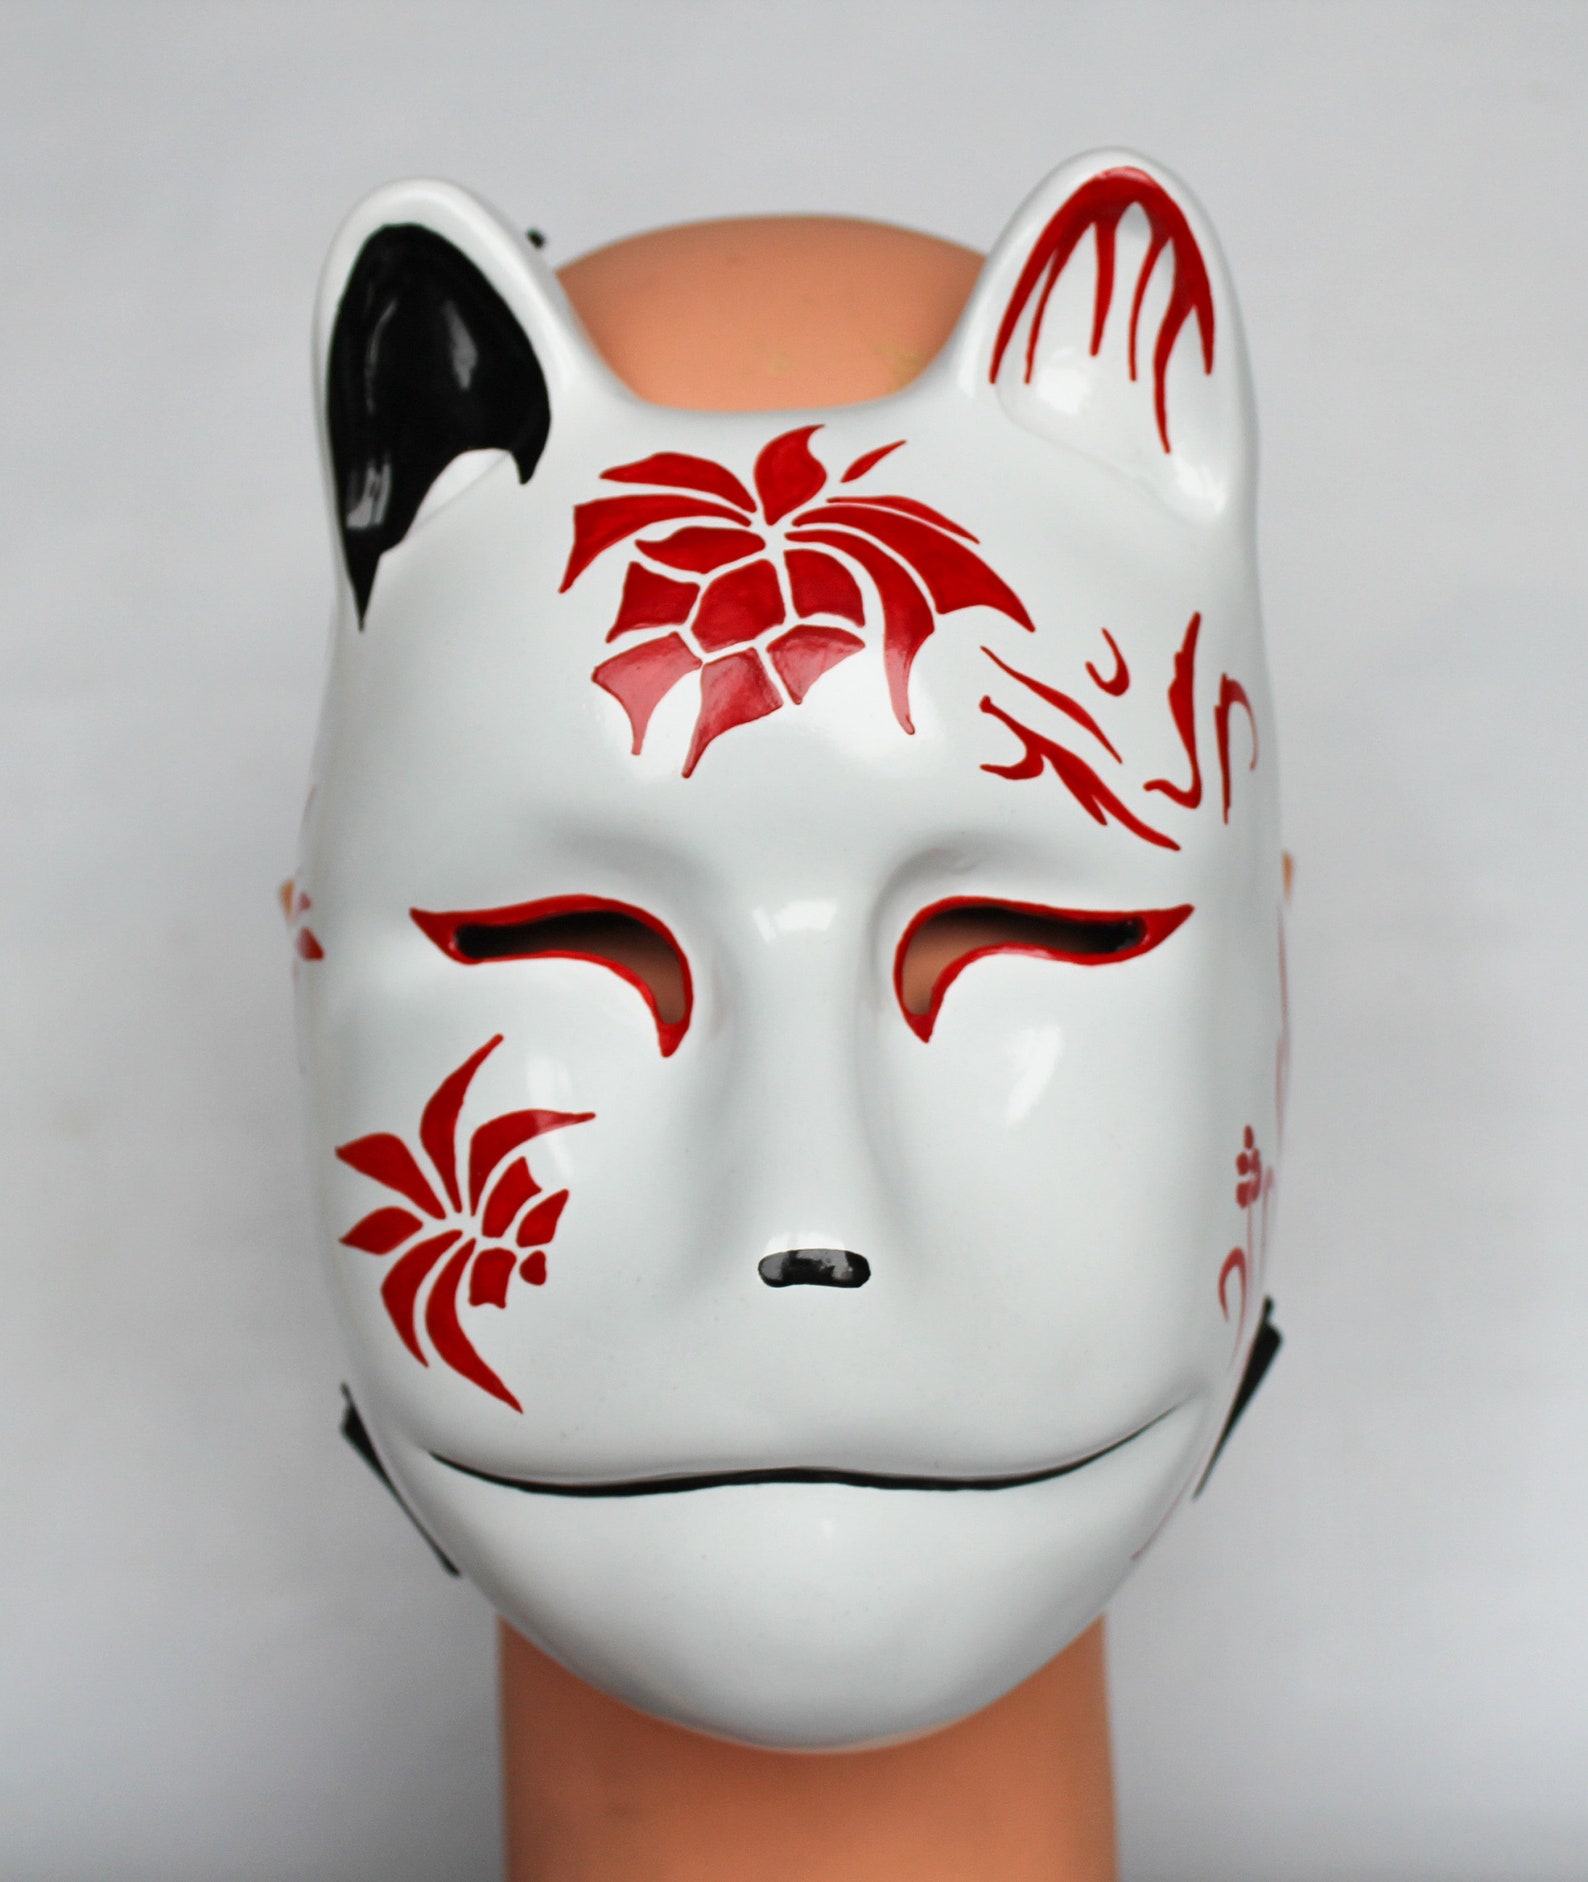 Kitsune mythical Japanese creature mask | Etsy